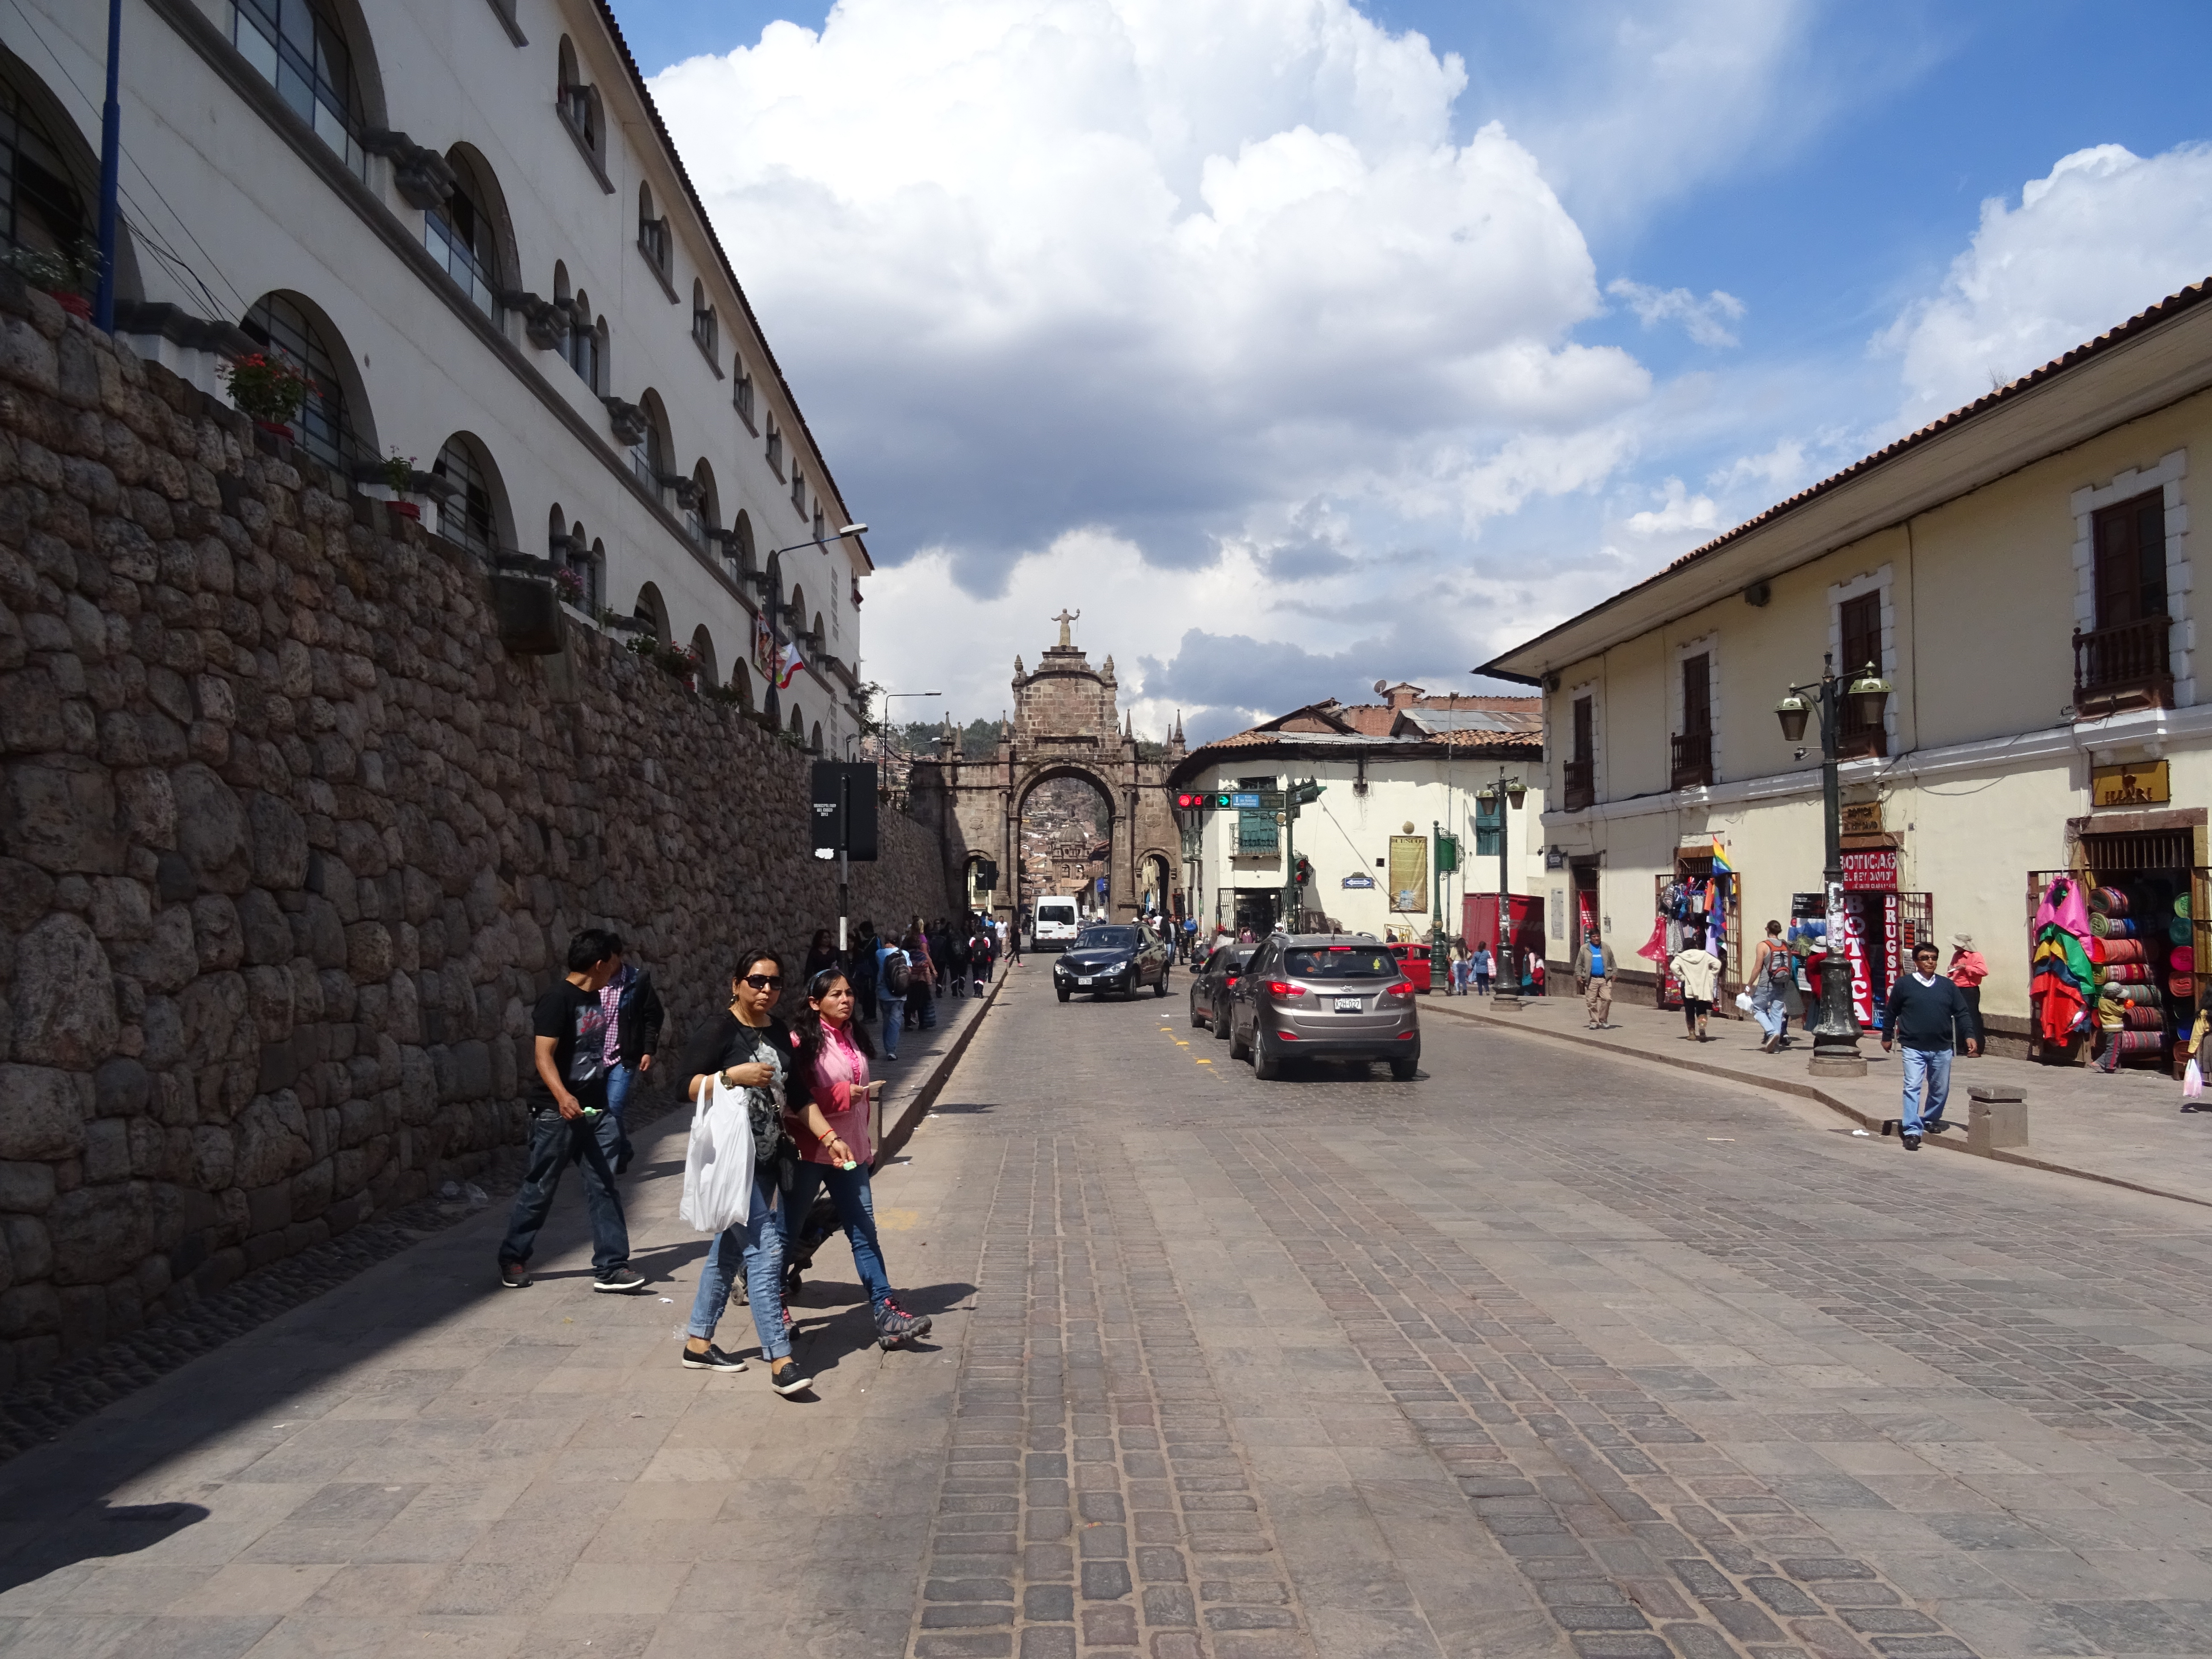 A street view in Cusco